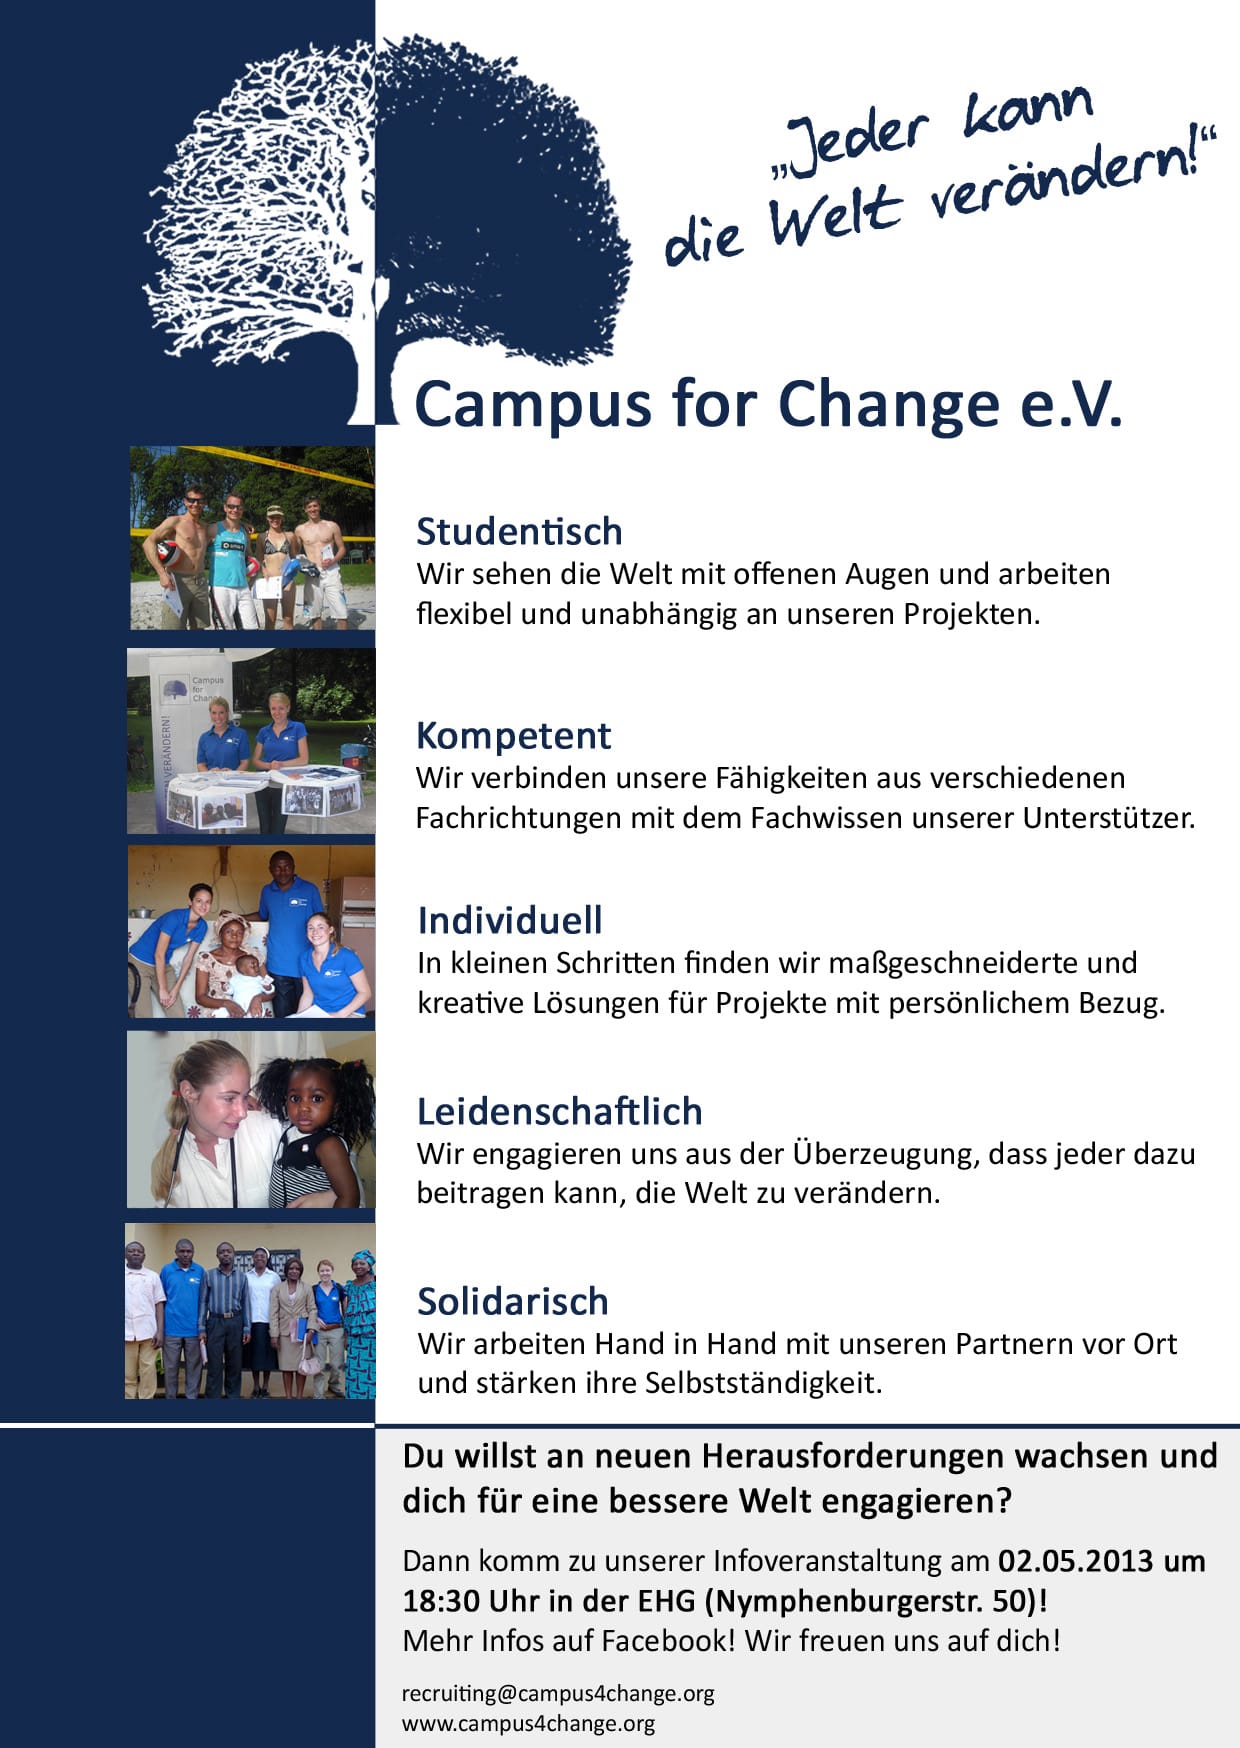 Campus for Change – Studenten verändern!